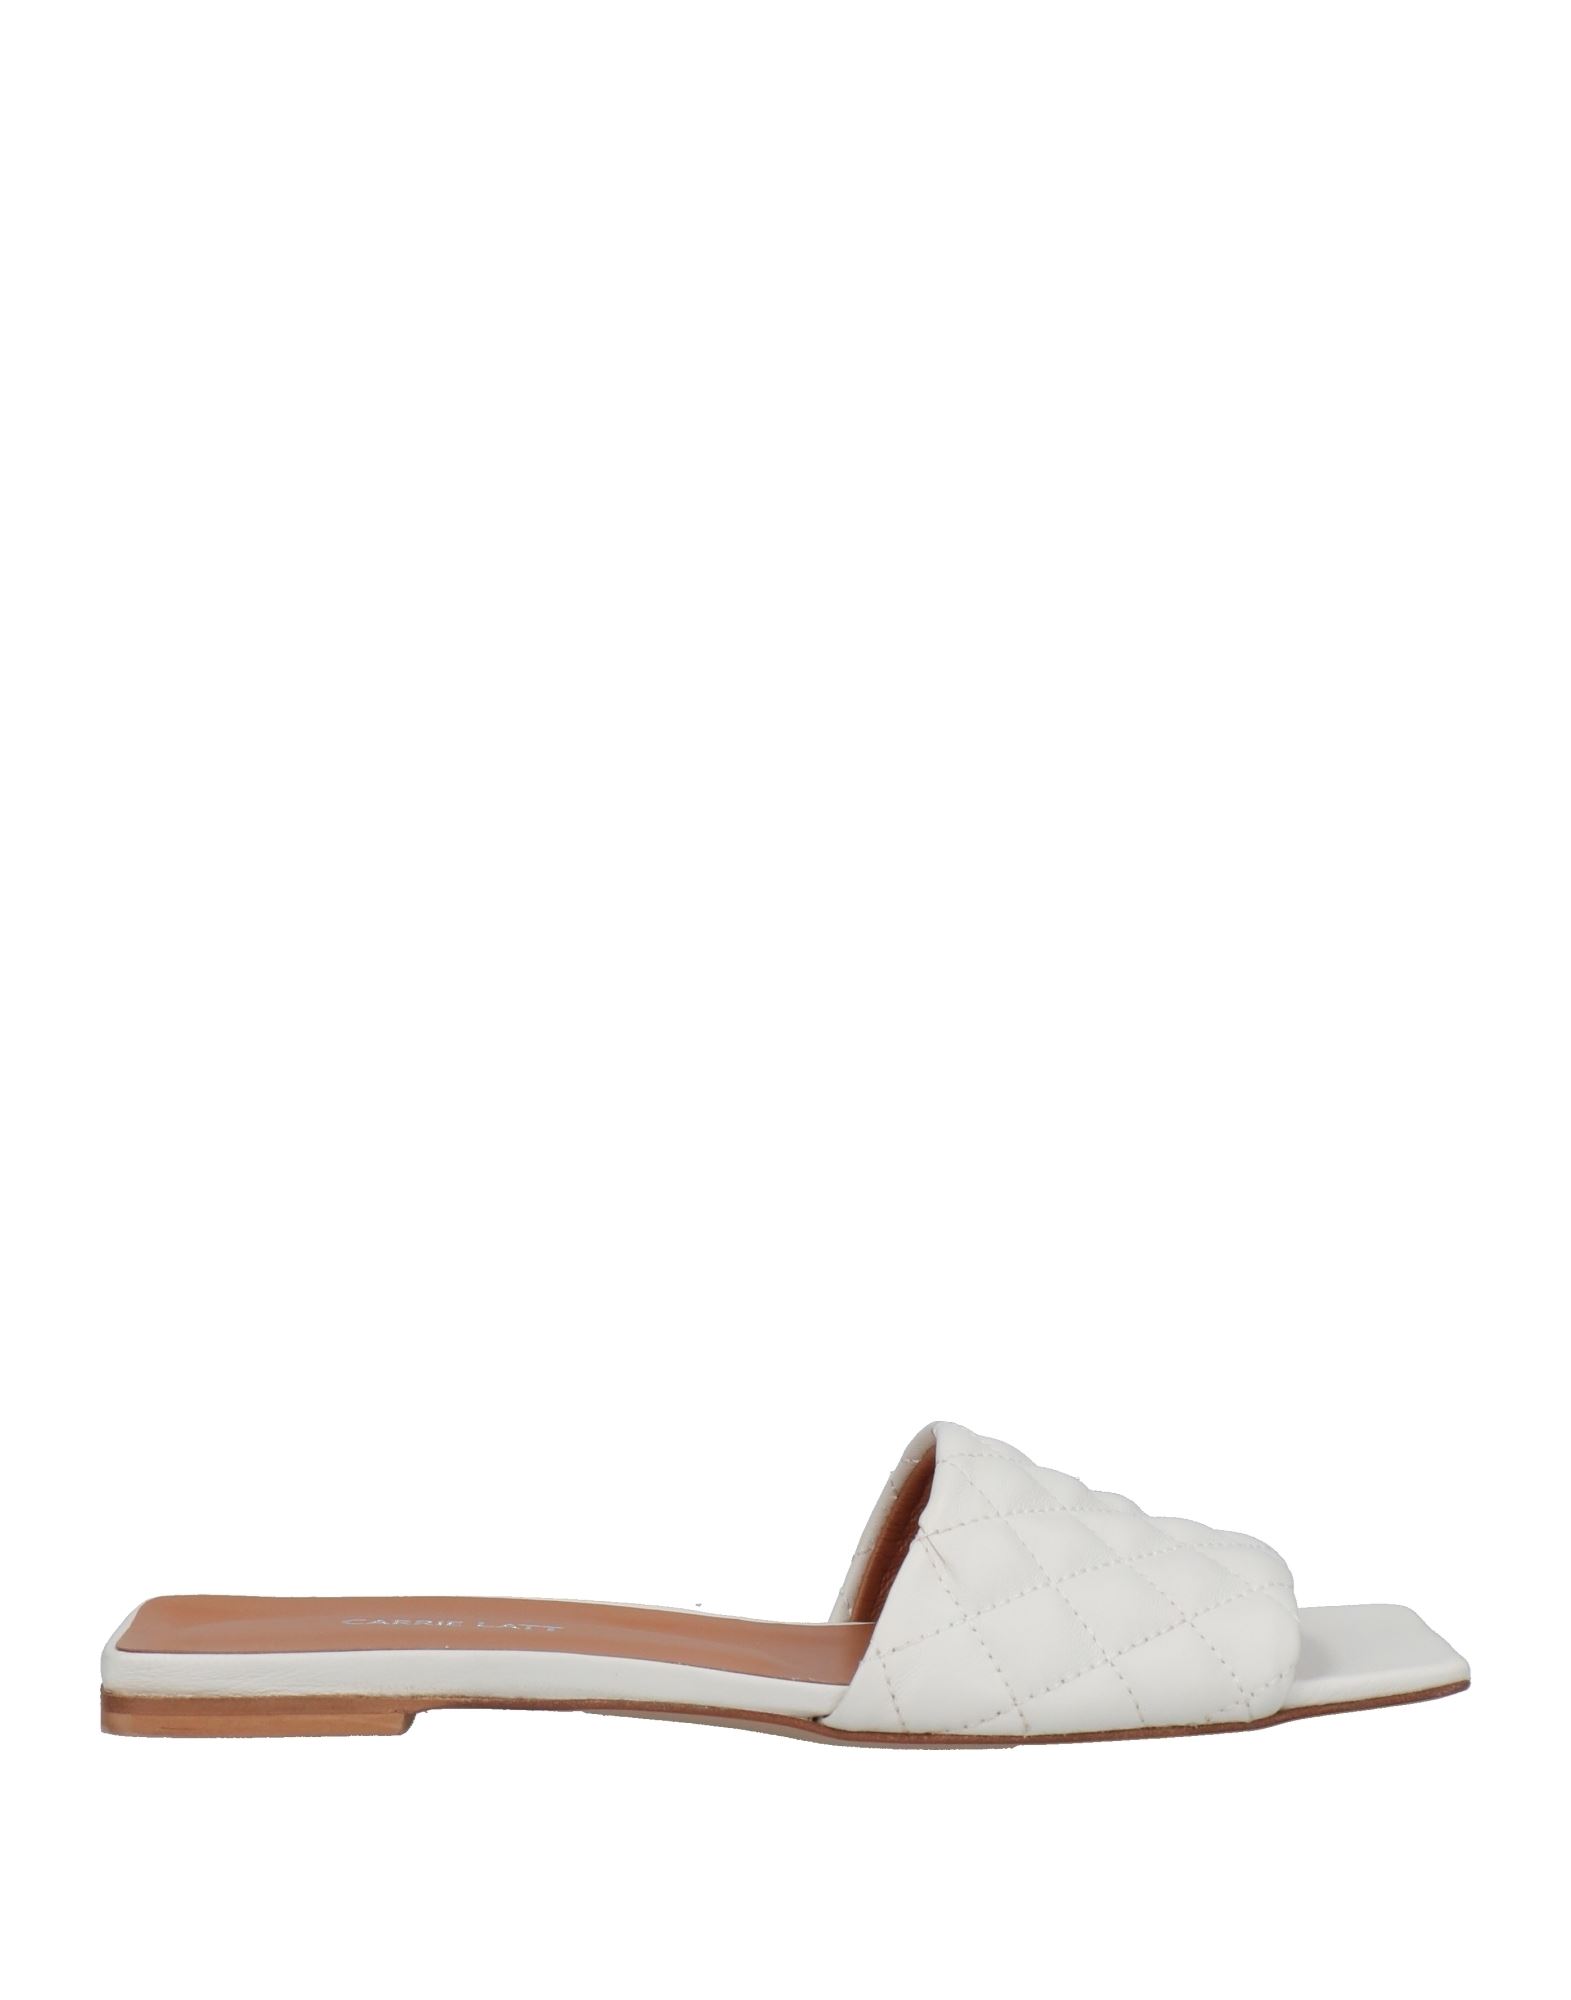 Carrie Latt Sandals In White